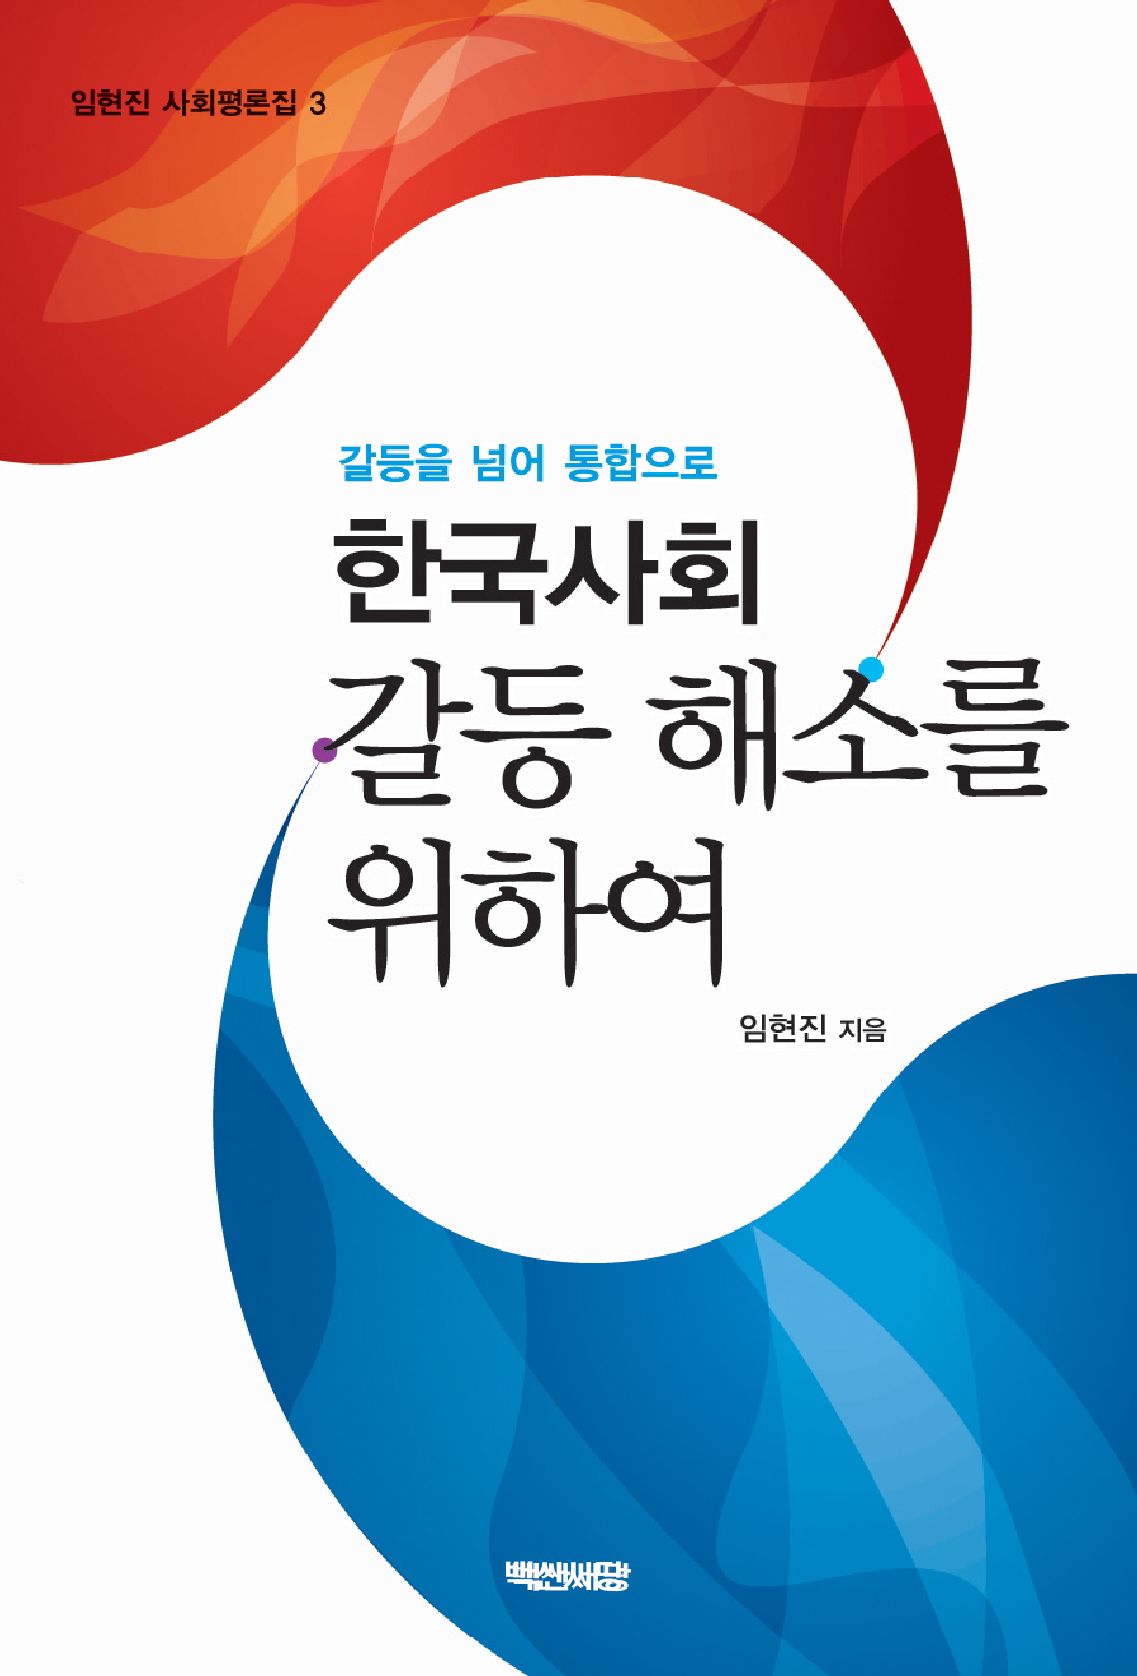 한국사회 갈등 해소를 위하여